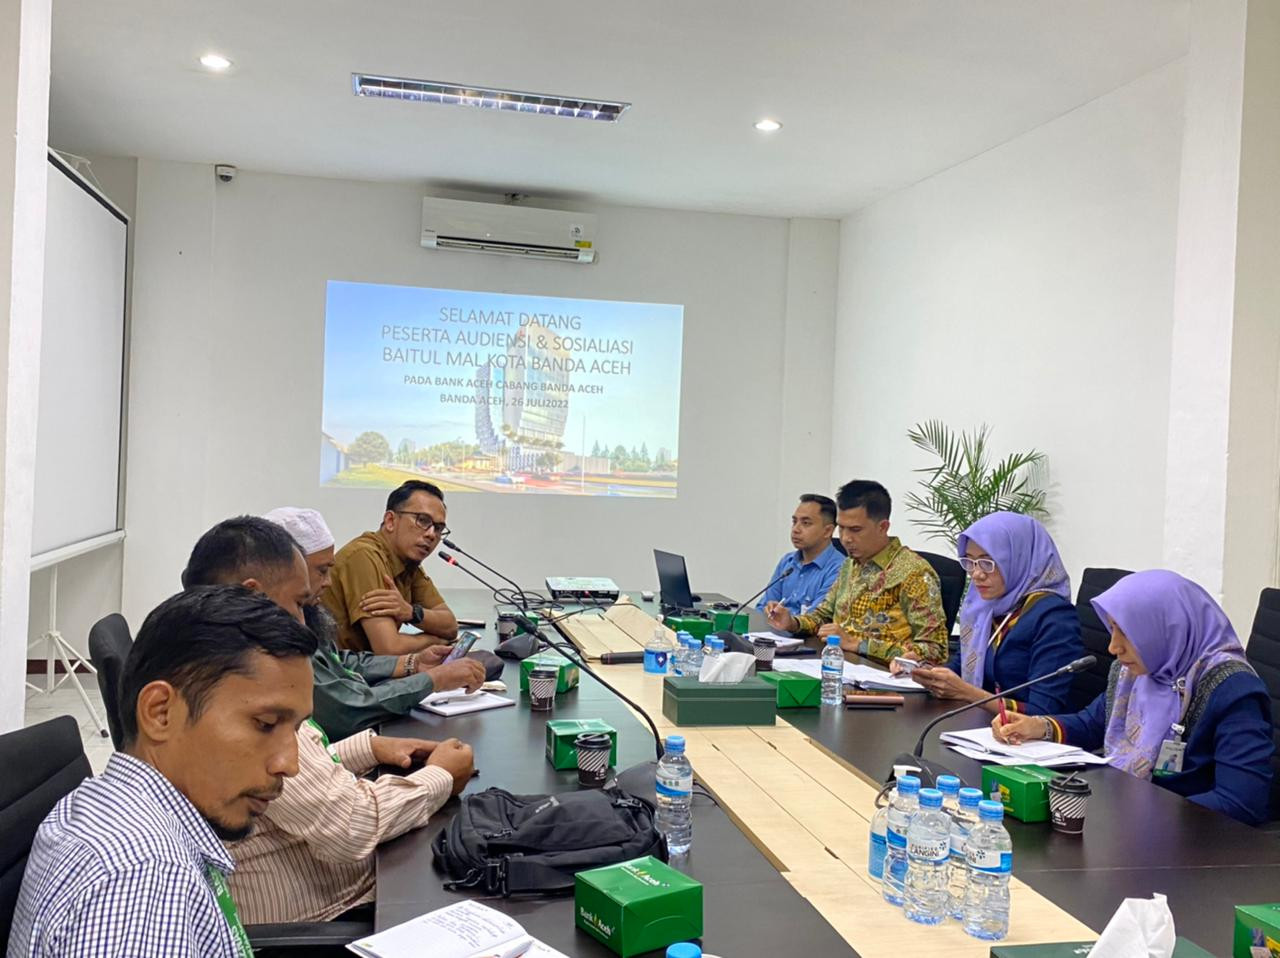 Audiensi dengan Bank Aceh Syariah, Baitul Mal Kota Banda Aceh akan hadir dalam aplikasi mobile Action